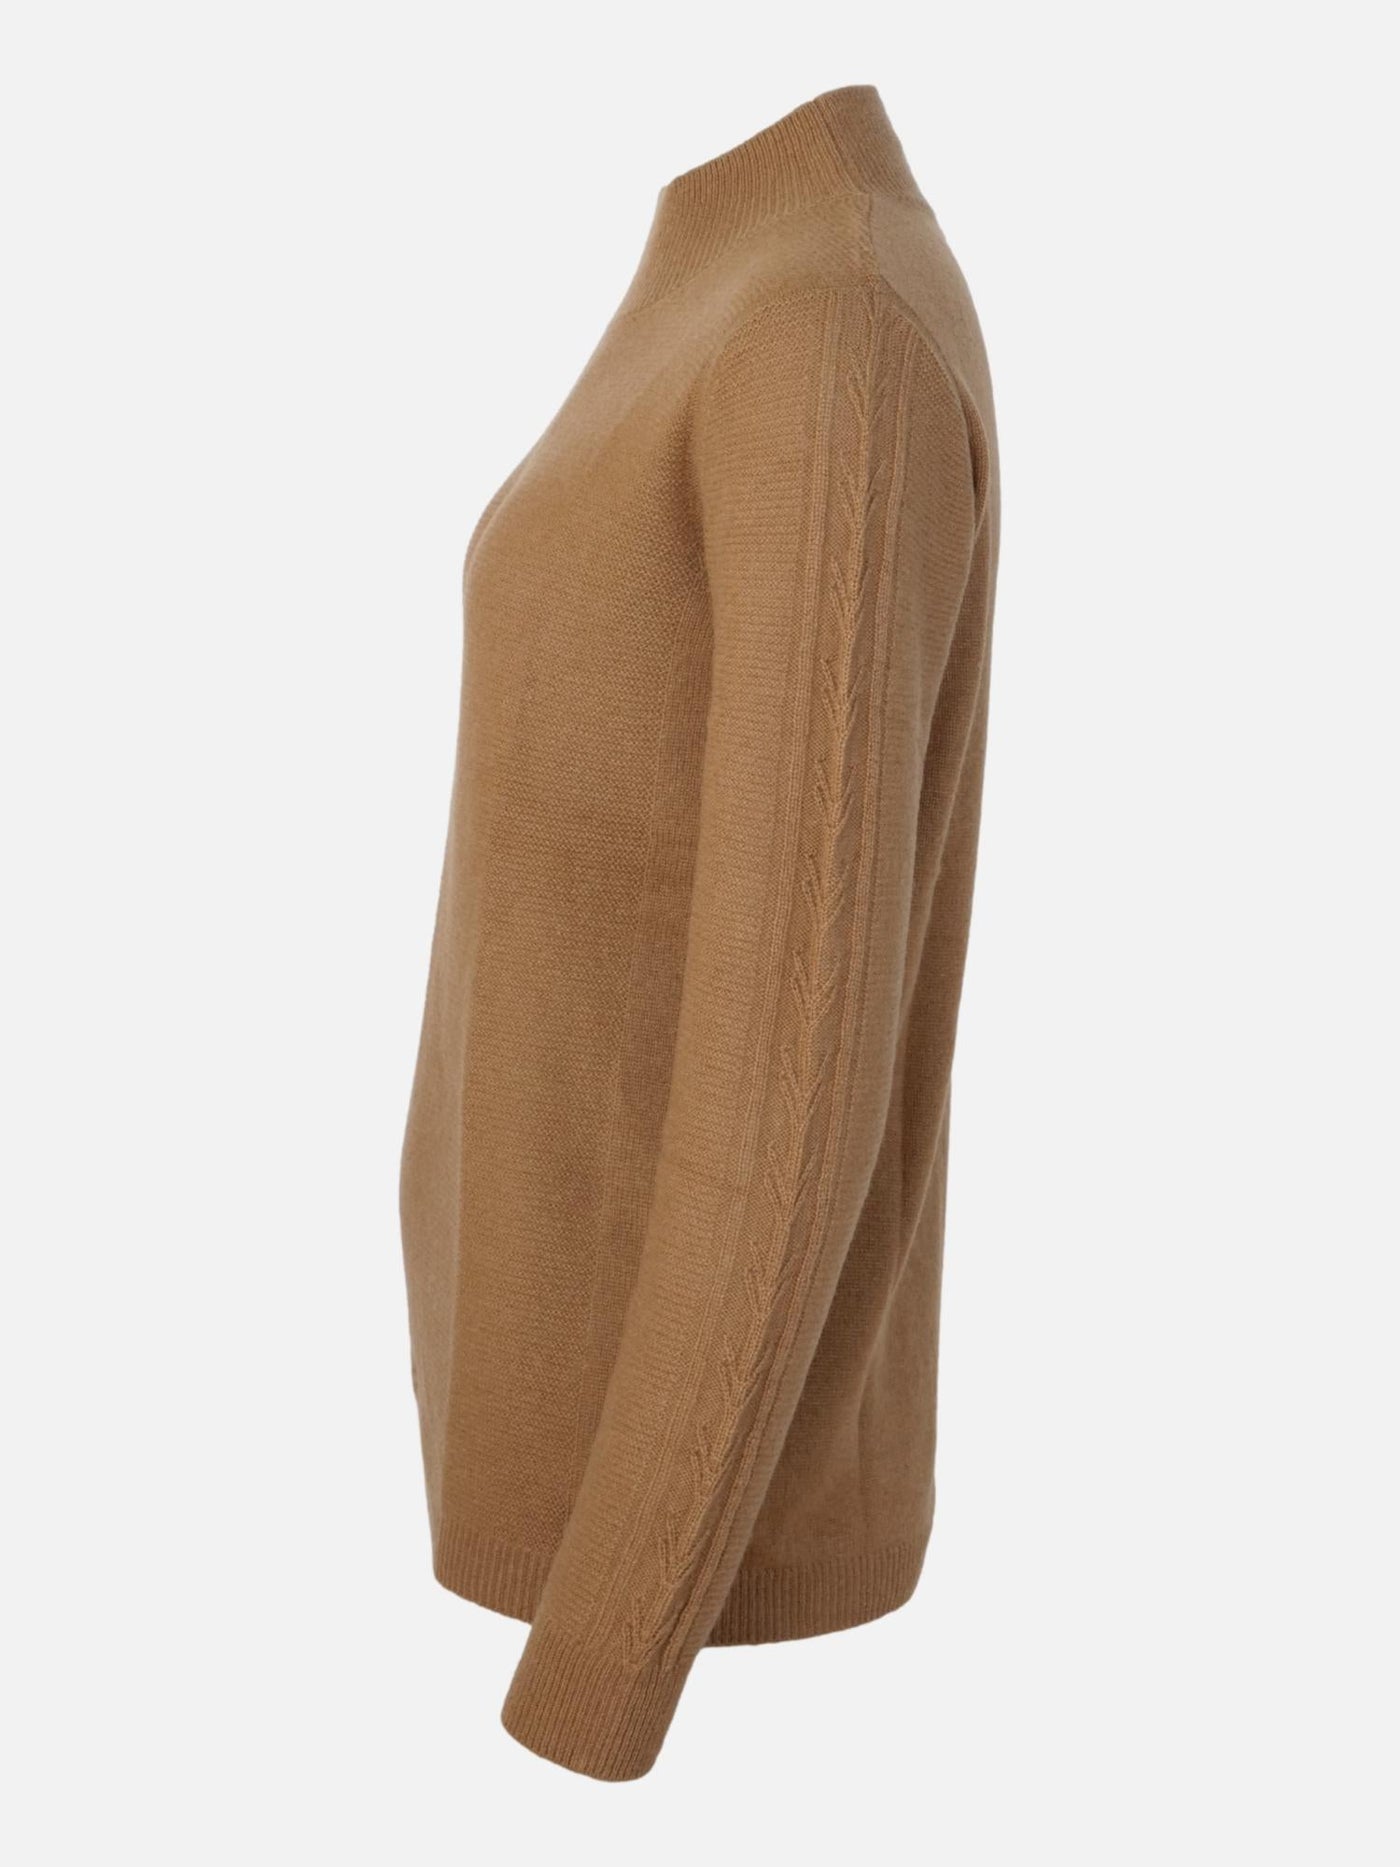 MKI Sweater - 100% Cashmere - Accesories - Dark Camel